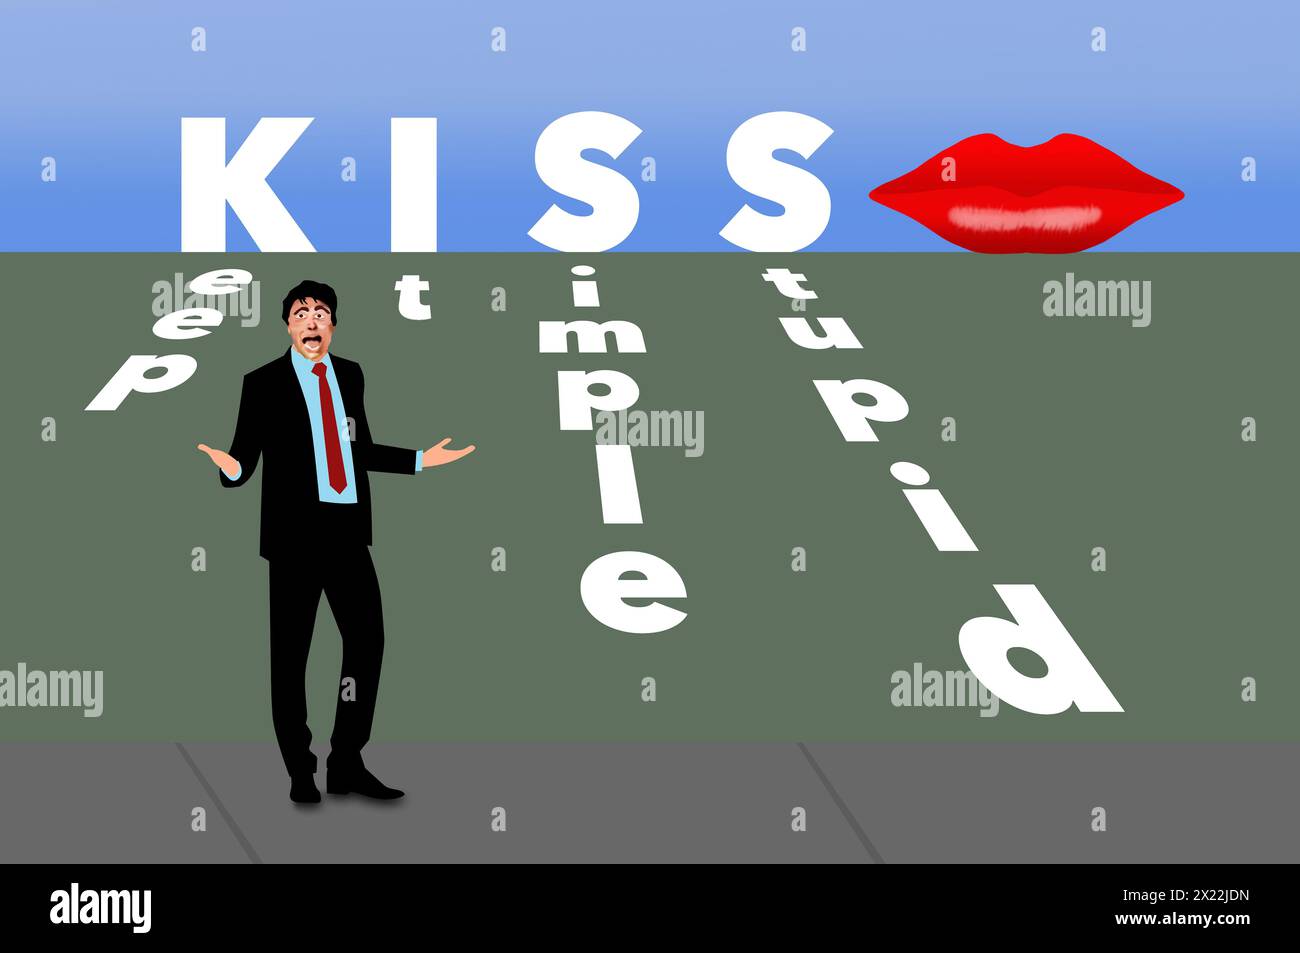 Halten Sie es einfach, dumm ist ein Akronym namens KISS. Vereinfachung Ihrer Geschäftsideen ist das Konzept in dieser 3D-Abbildung. Stockfoto